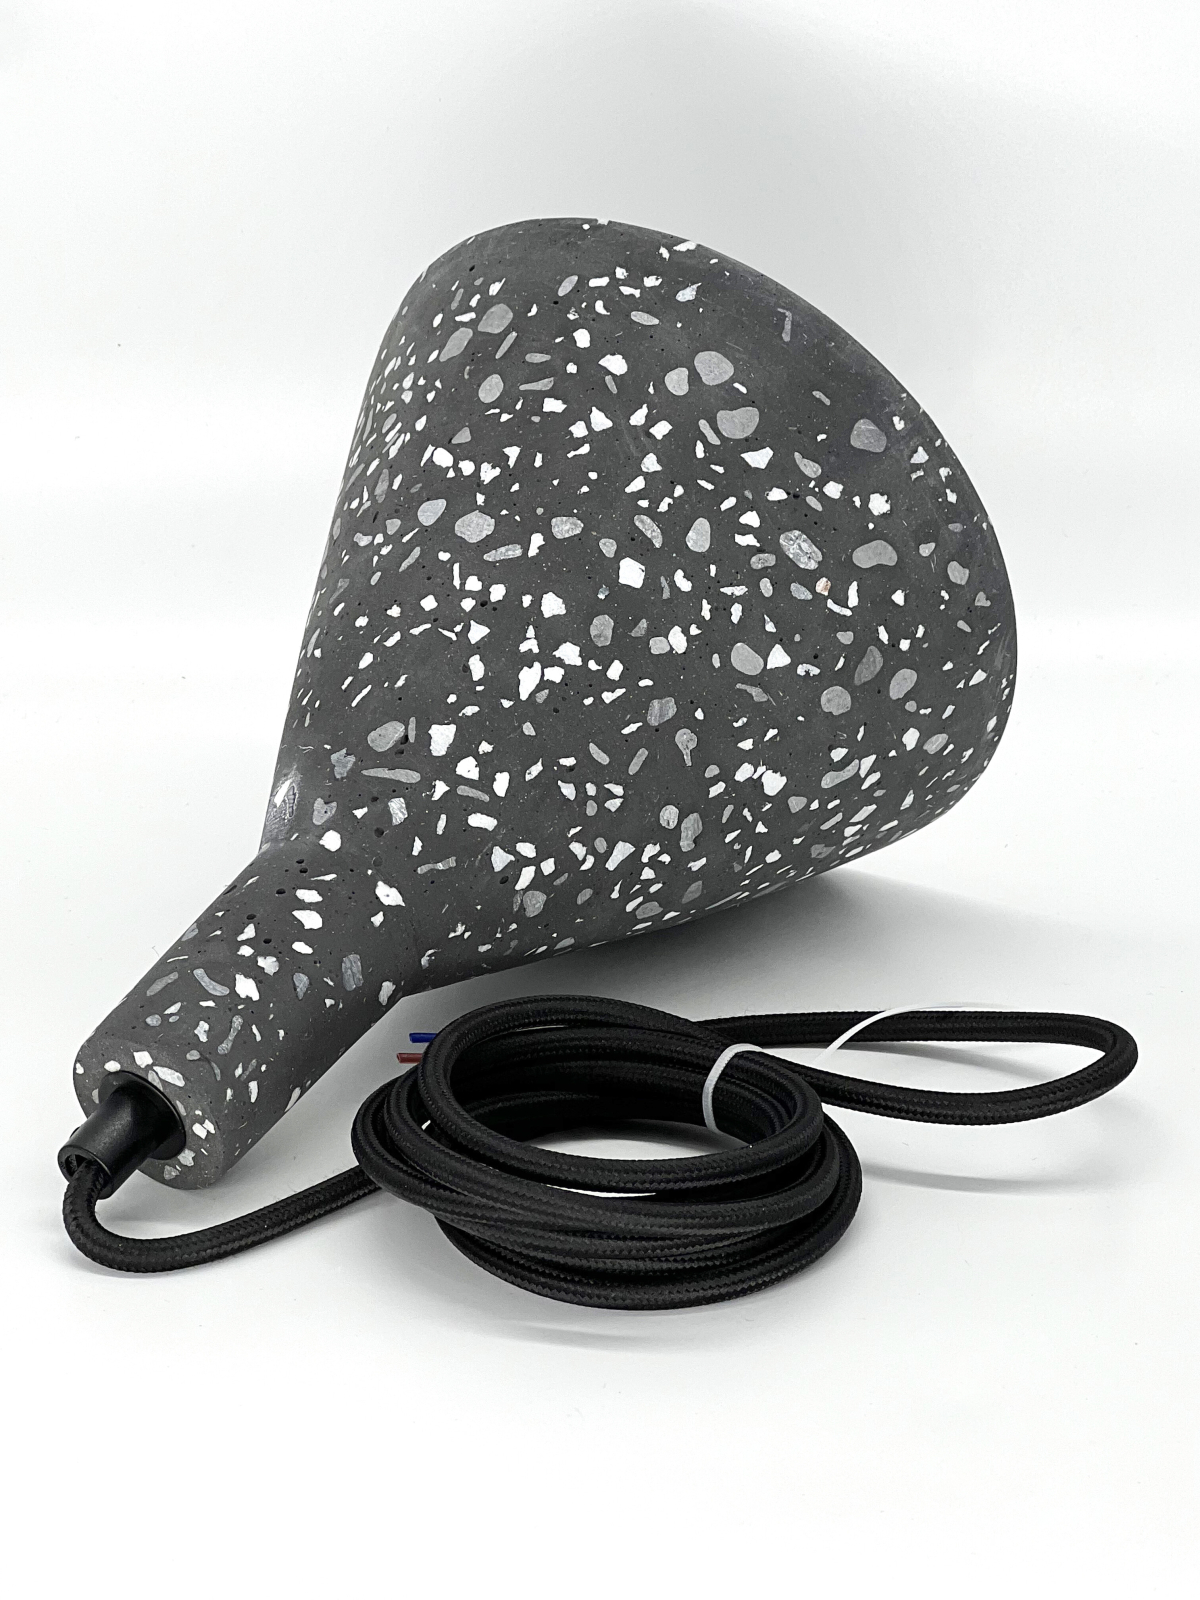 Подвесной светильник конусный под лампу E27 иск.камень, цвет черн гранит, IP20 (21403) - Фото 4